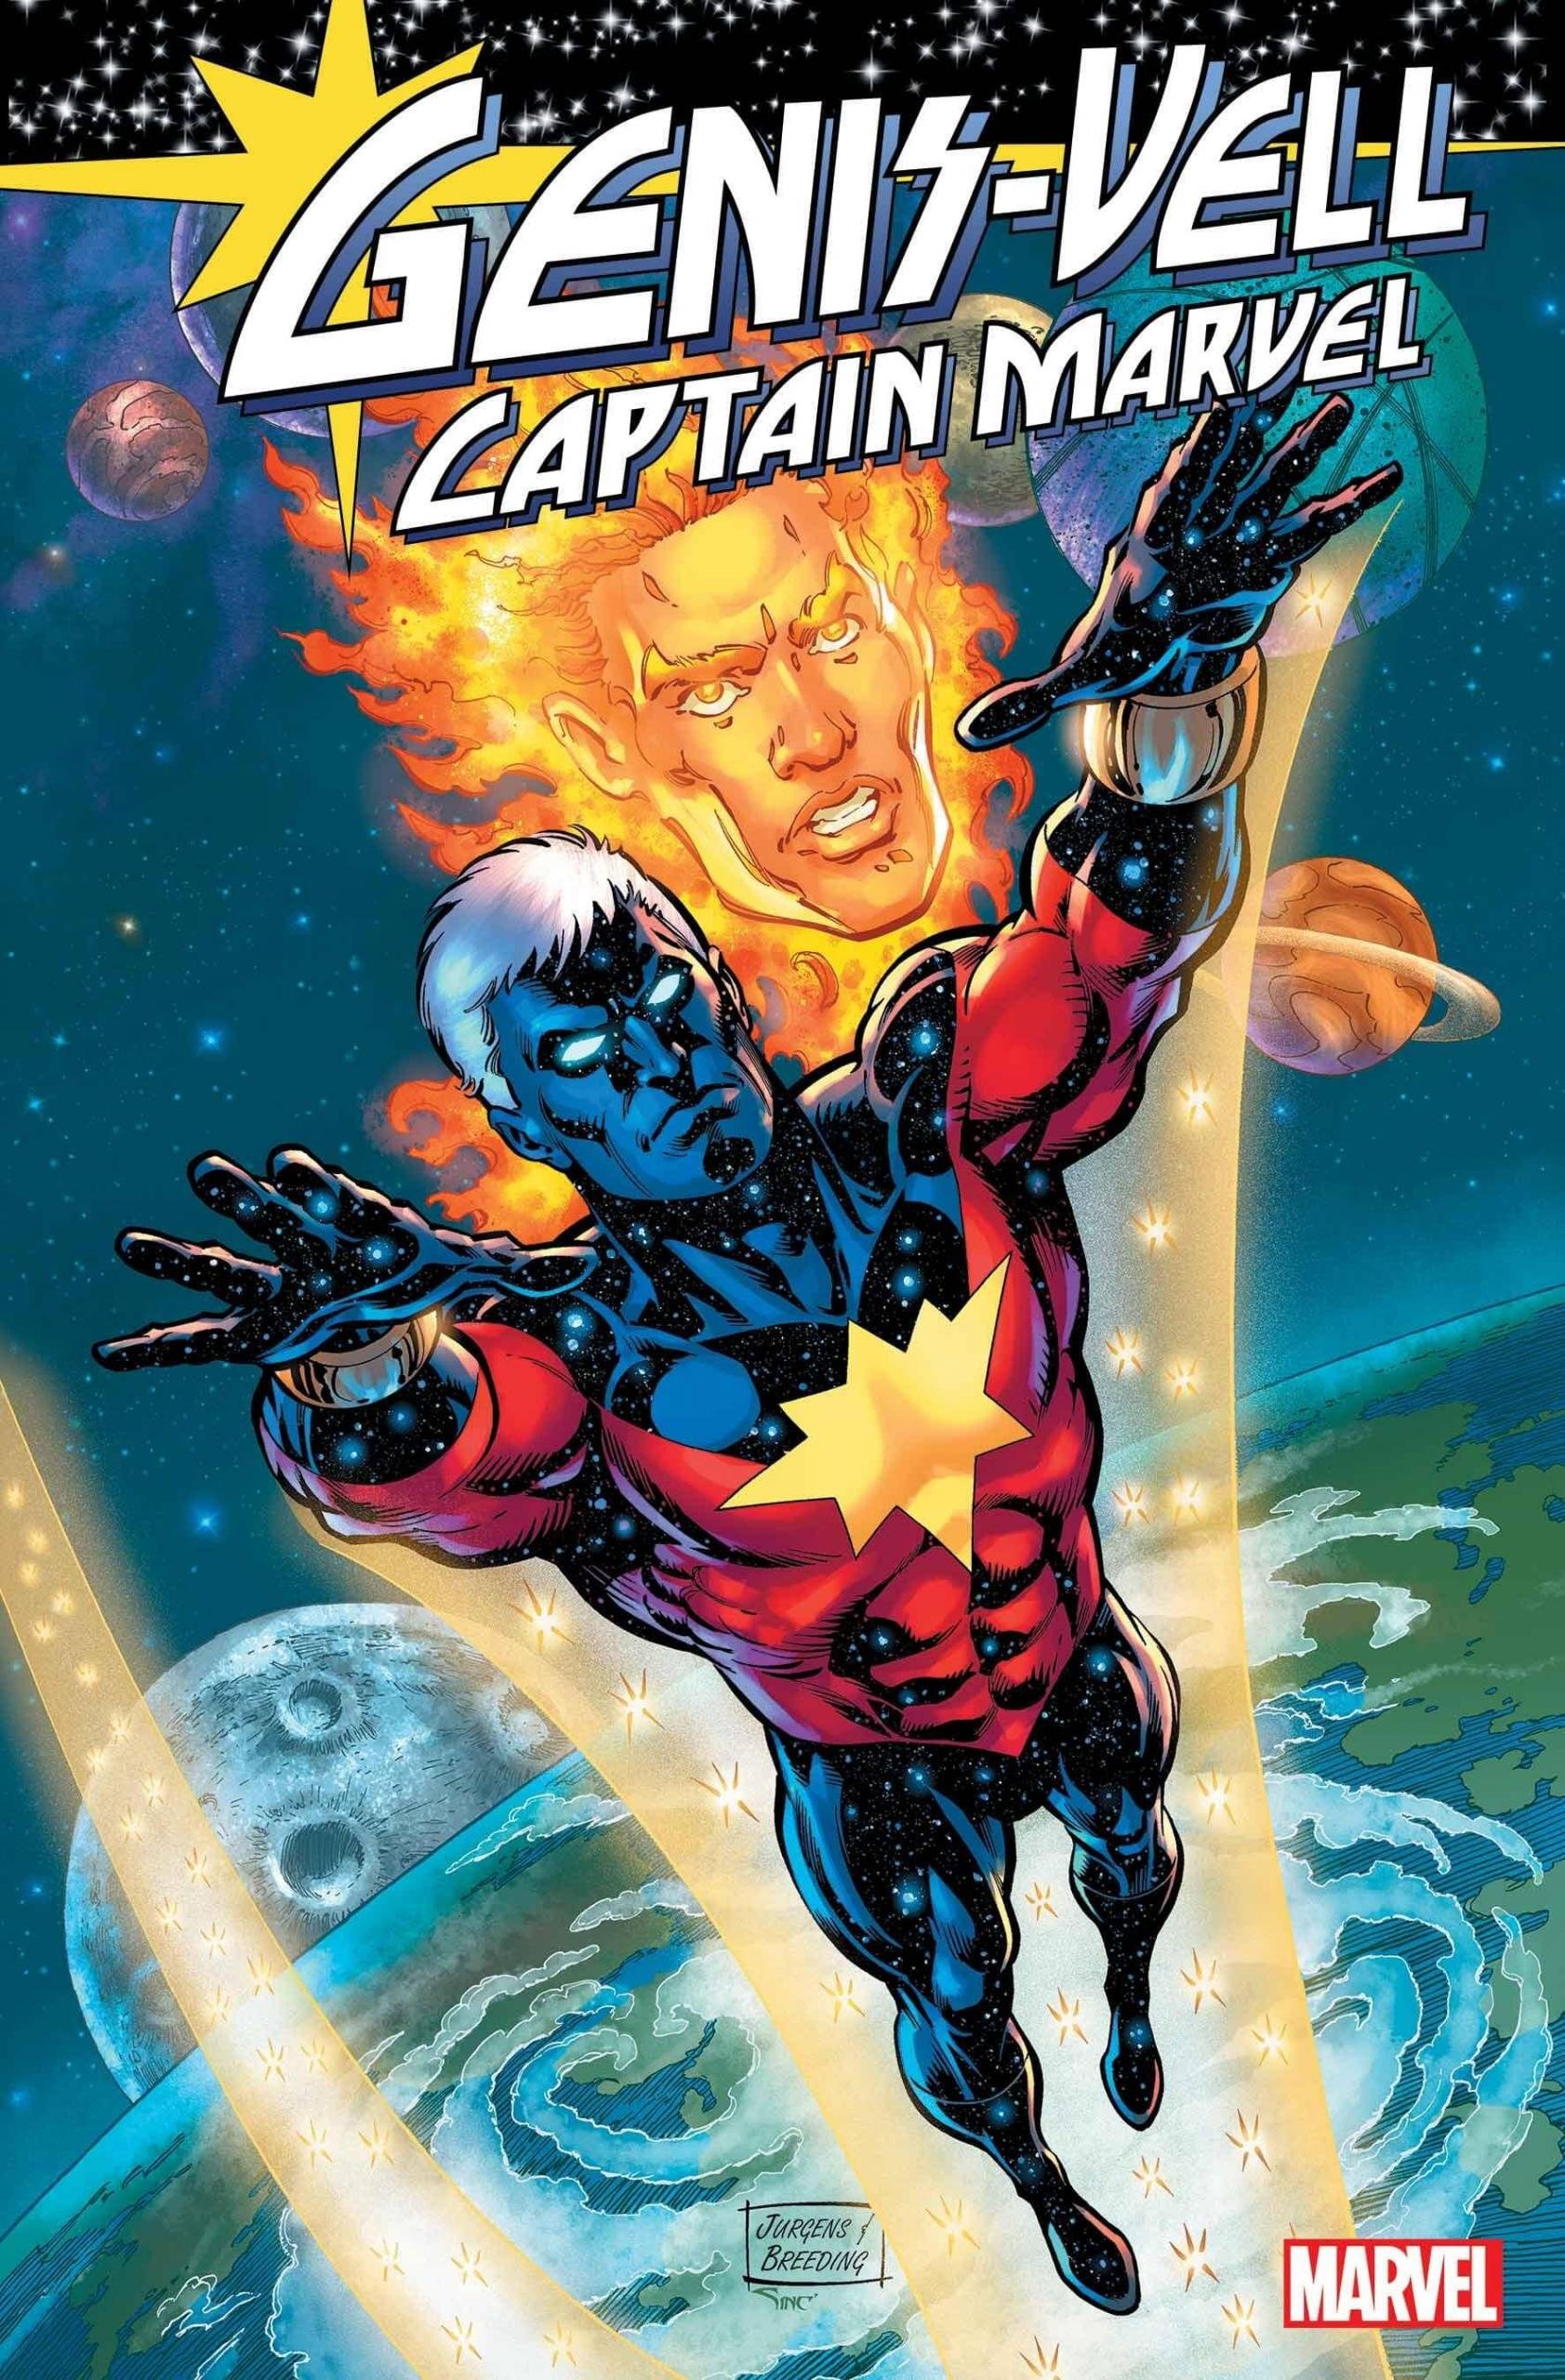 Variant Cover di Genis-Vell: Captain Marvel 1 di Dan Jurgens, il ritorno di Peter David sul personaggio